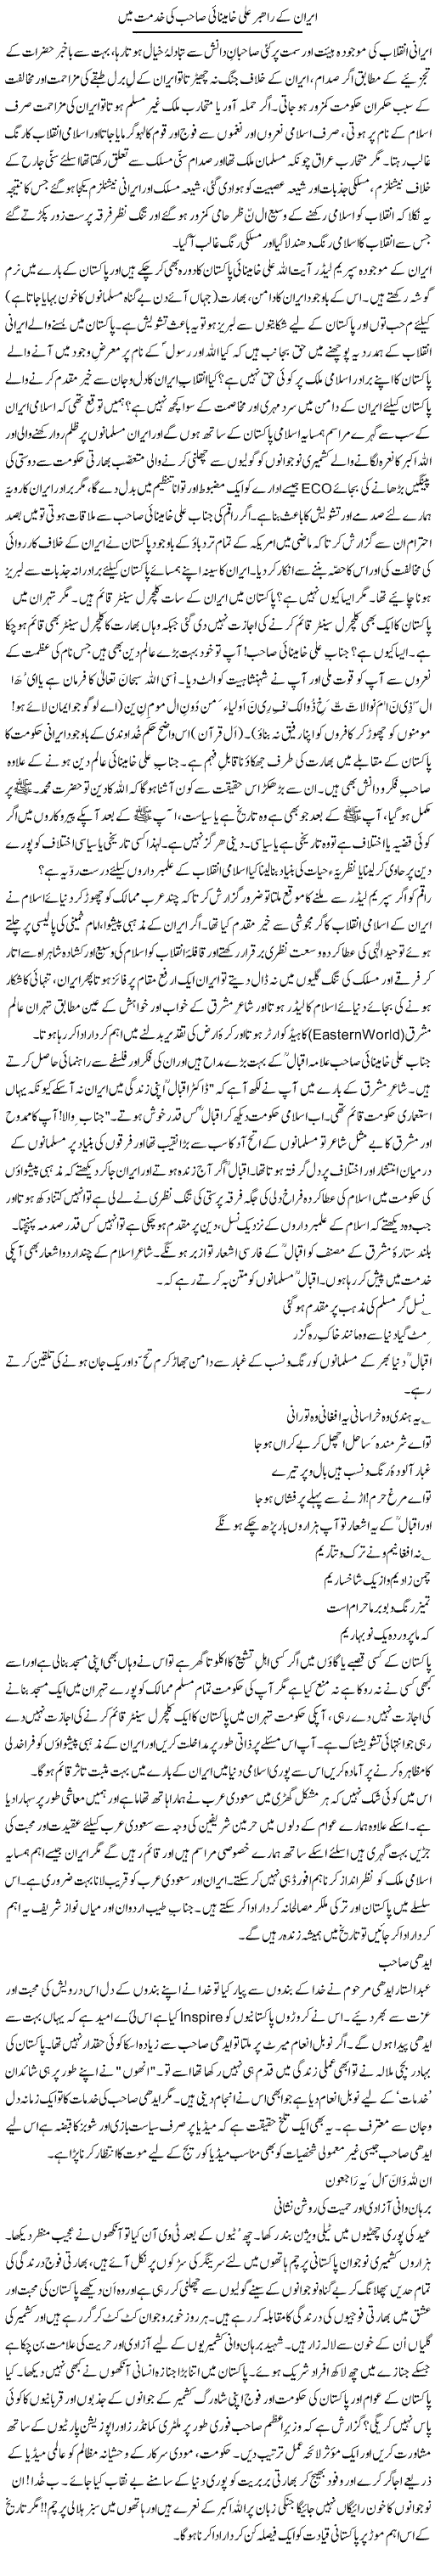 Iran ke rehbar Ali Khaminae sahib ki khidmat mein | Zulfiqar Ahmed Cheema | Daily Urdu Columns